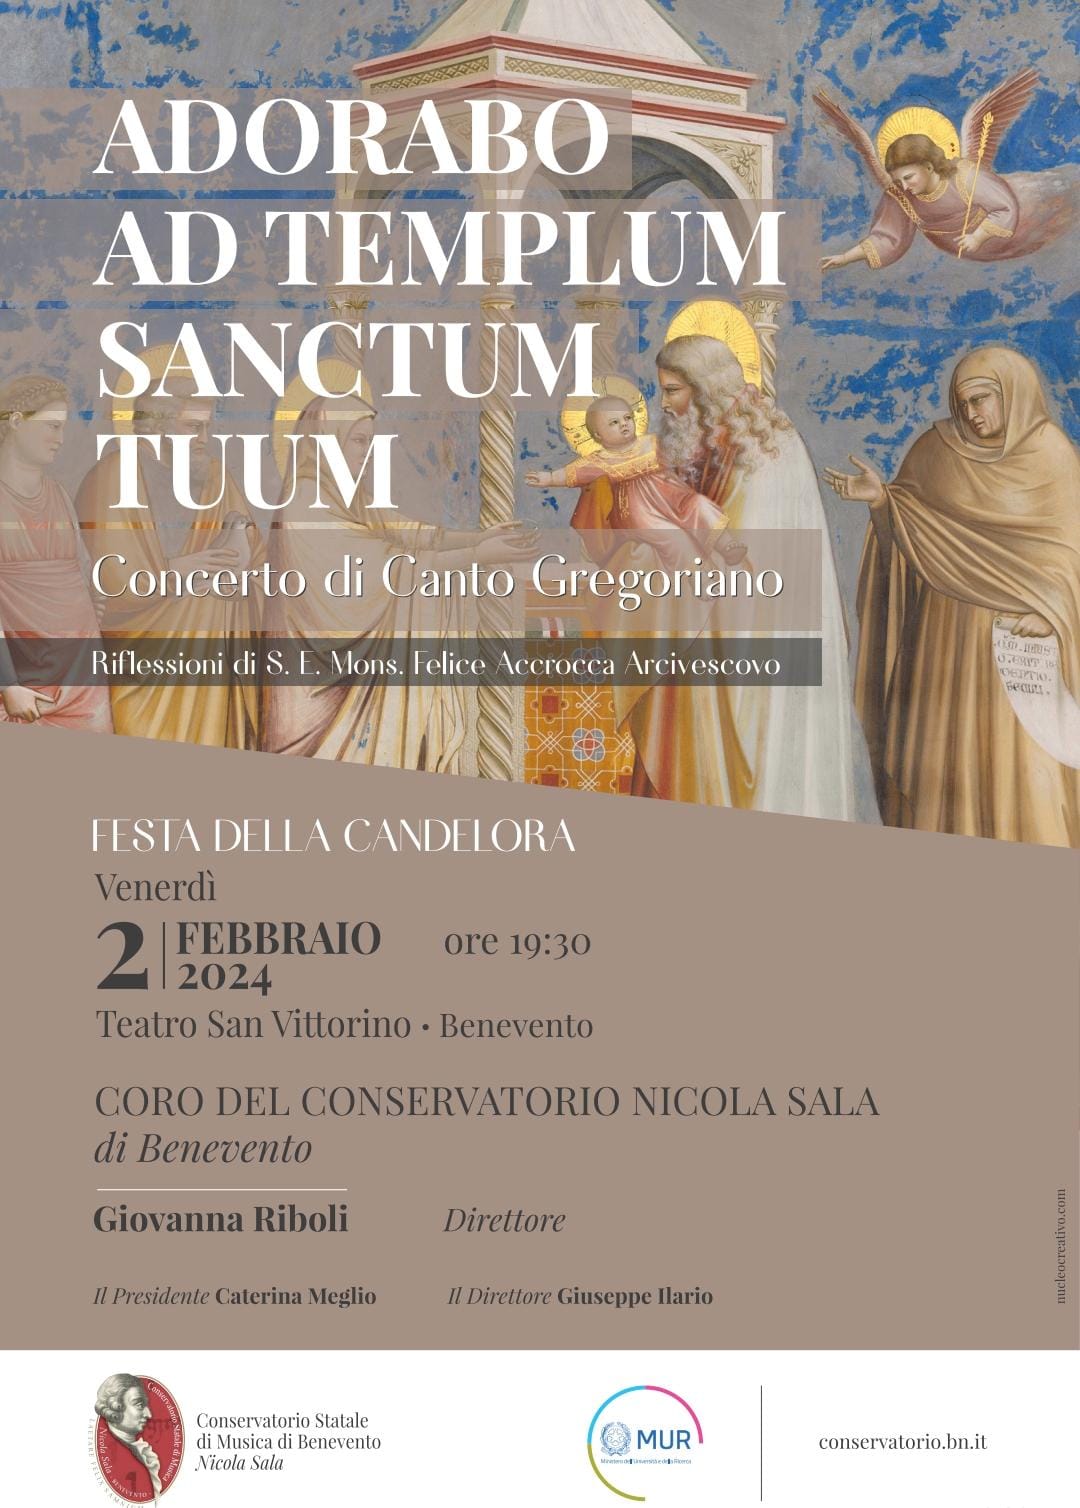 Conservatorio di Benevento. “Adorabo ad templum sanctum tuum” – Concerto per la Candelora